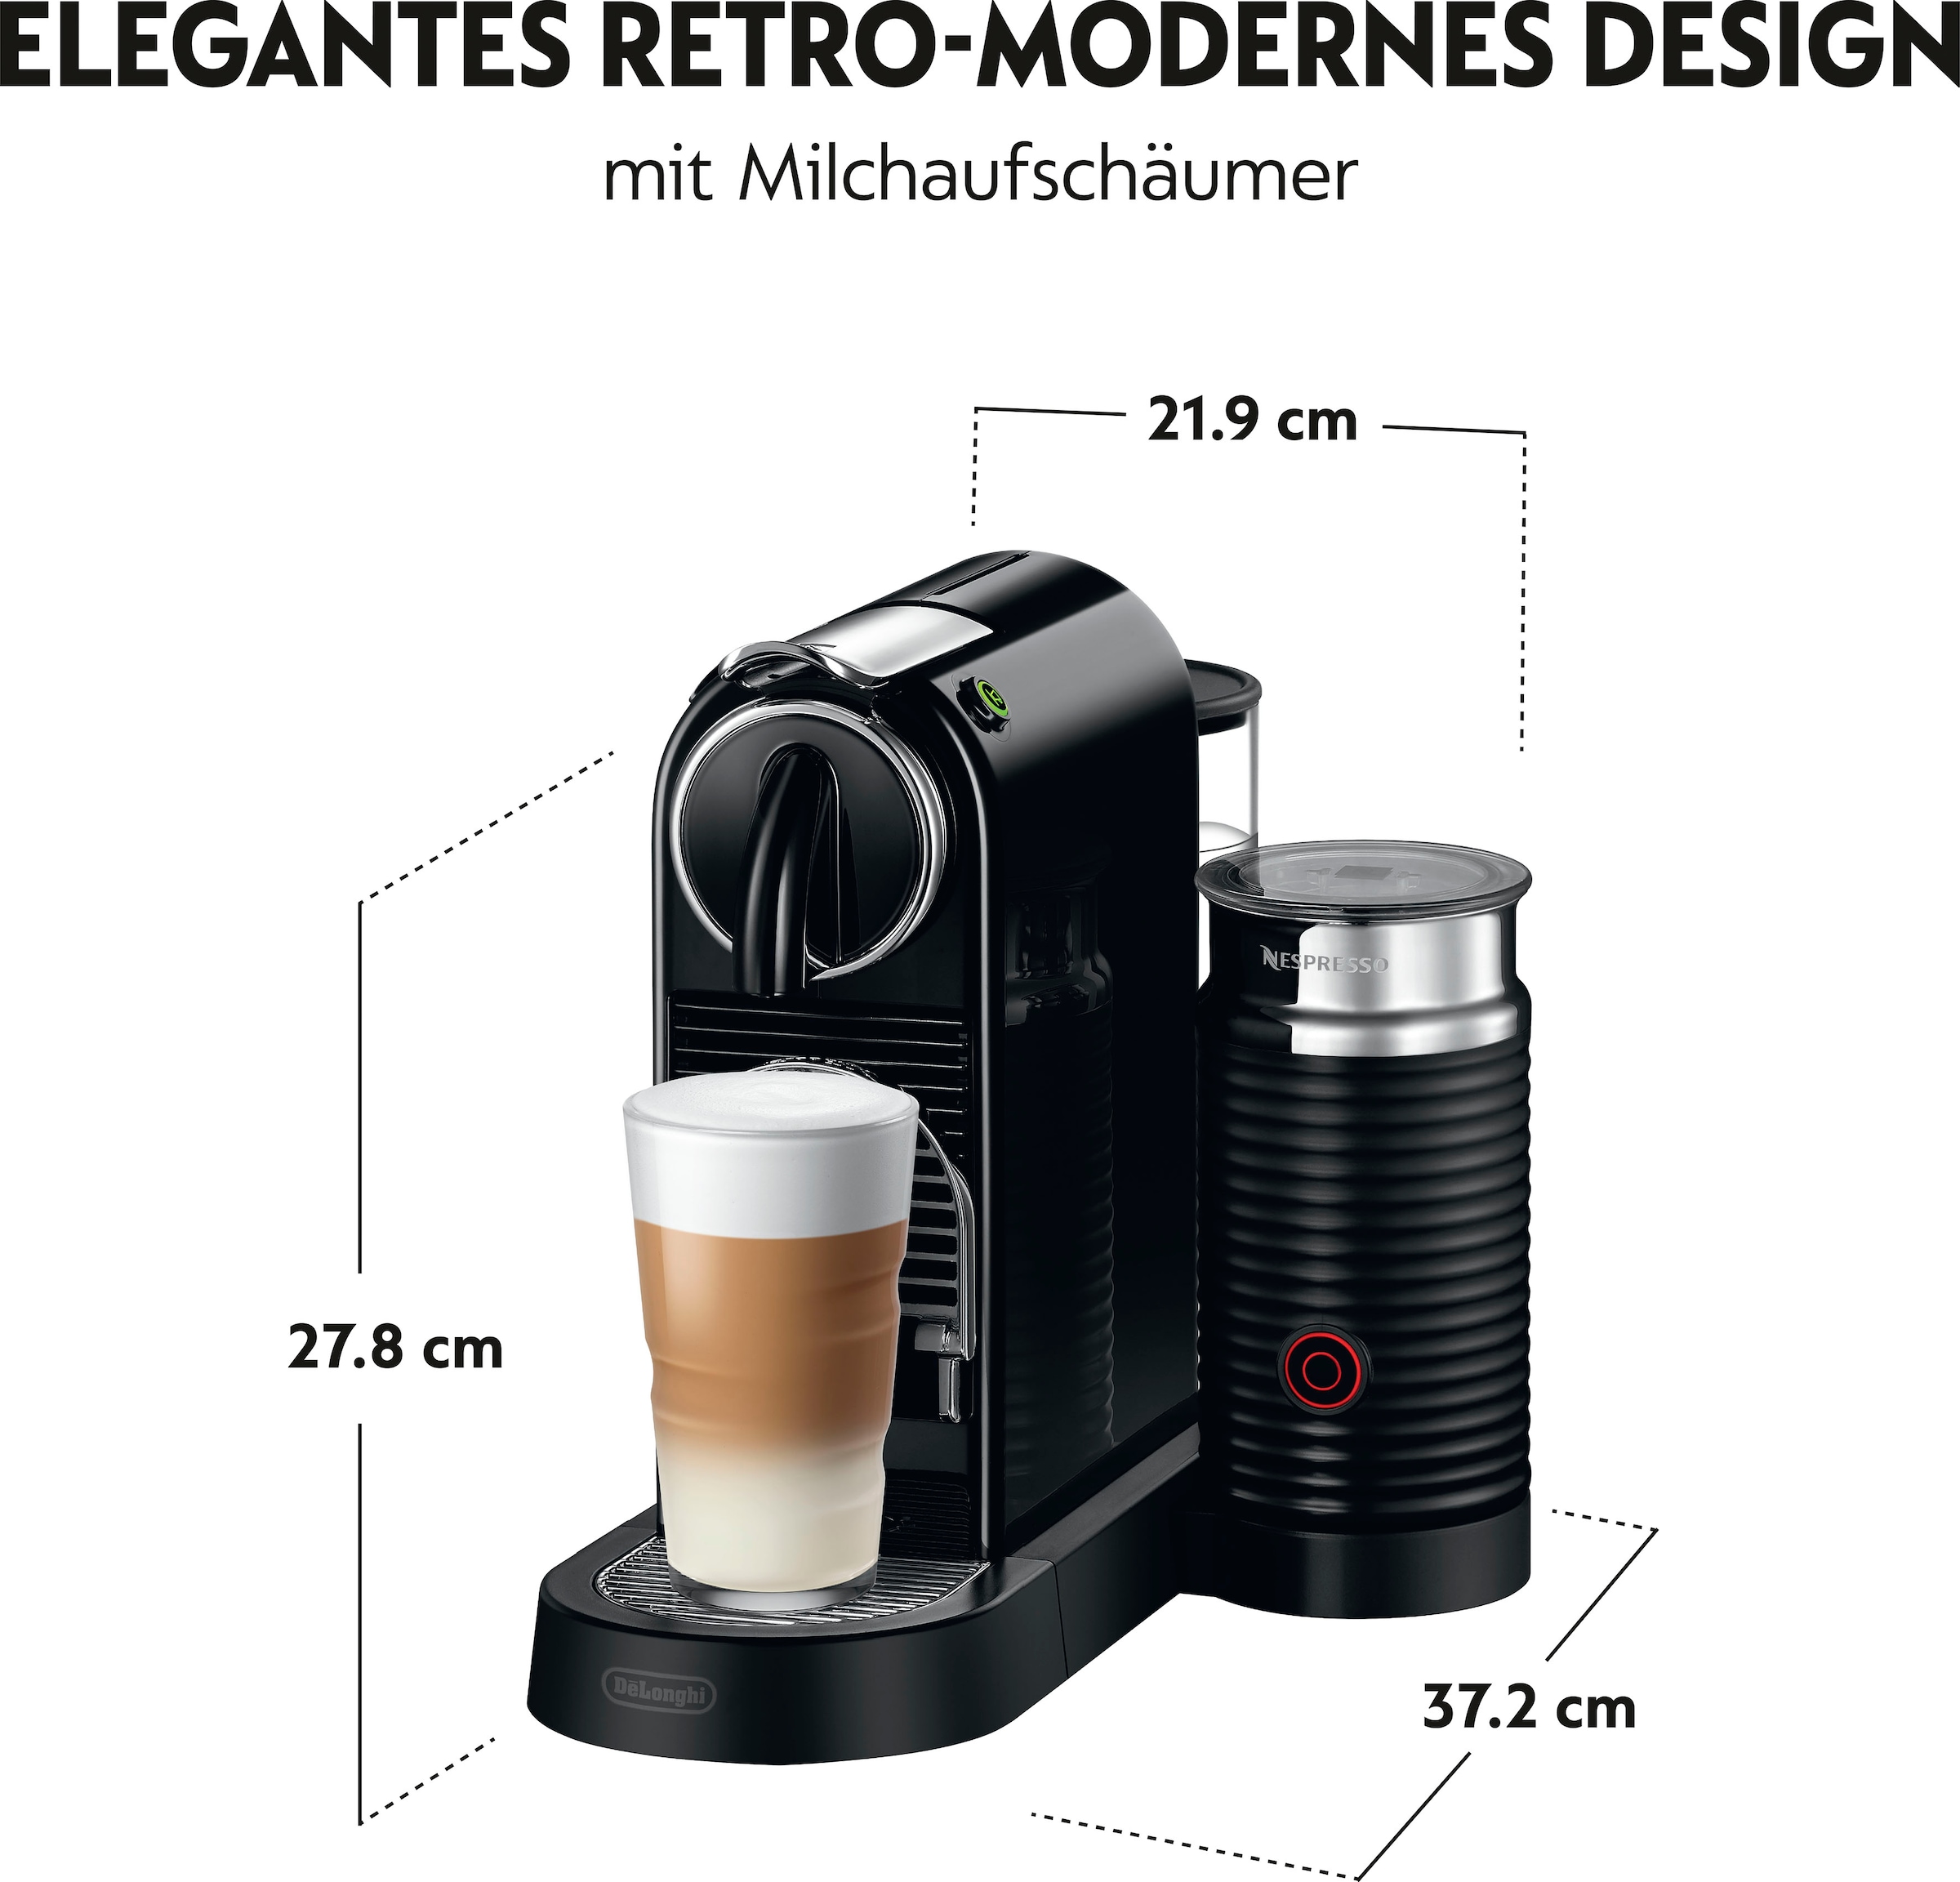 Nespresso Kapselmaschine »CITIZ EN 267.BAE von DeLonghi, Schwarz«, inkl. Aeroccino Milchaufschäumer, Willkommenspaket mit 7 Kapseln